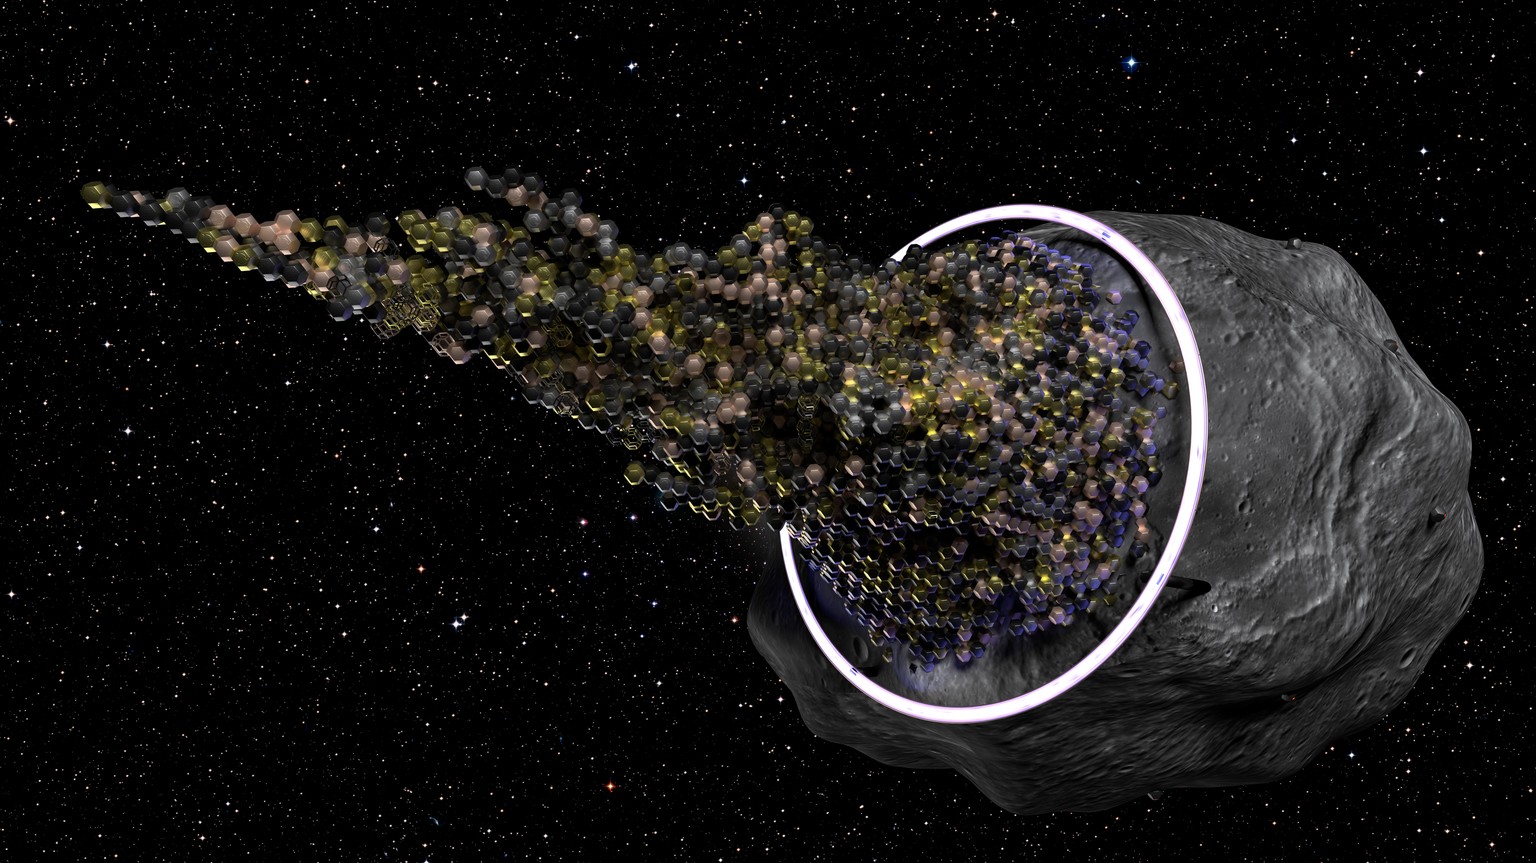 3D-Modell eines interstellaren Raumschiffs, das einen Asteroiden als Ressource nutzt.